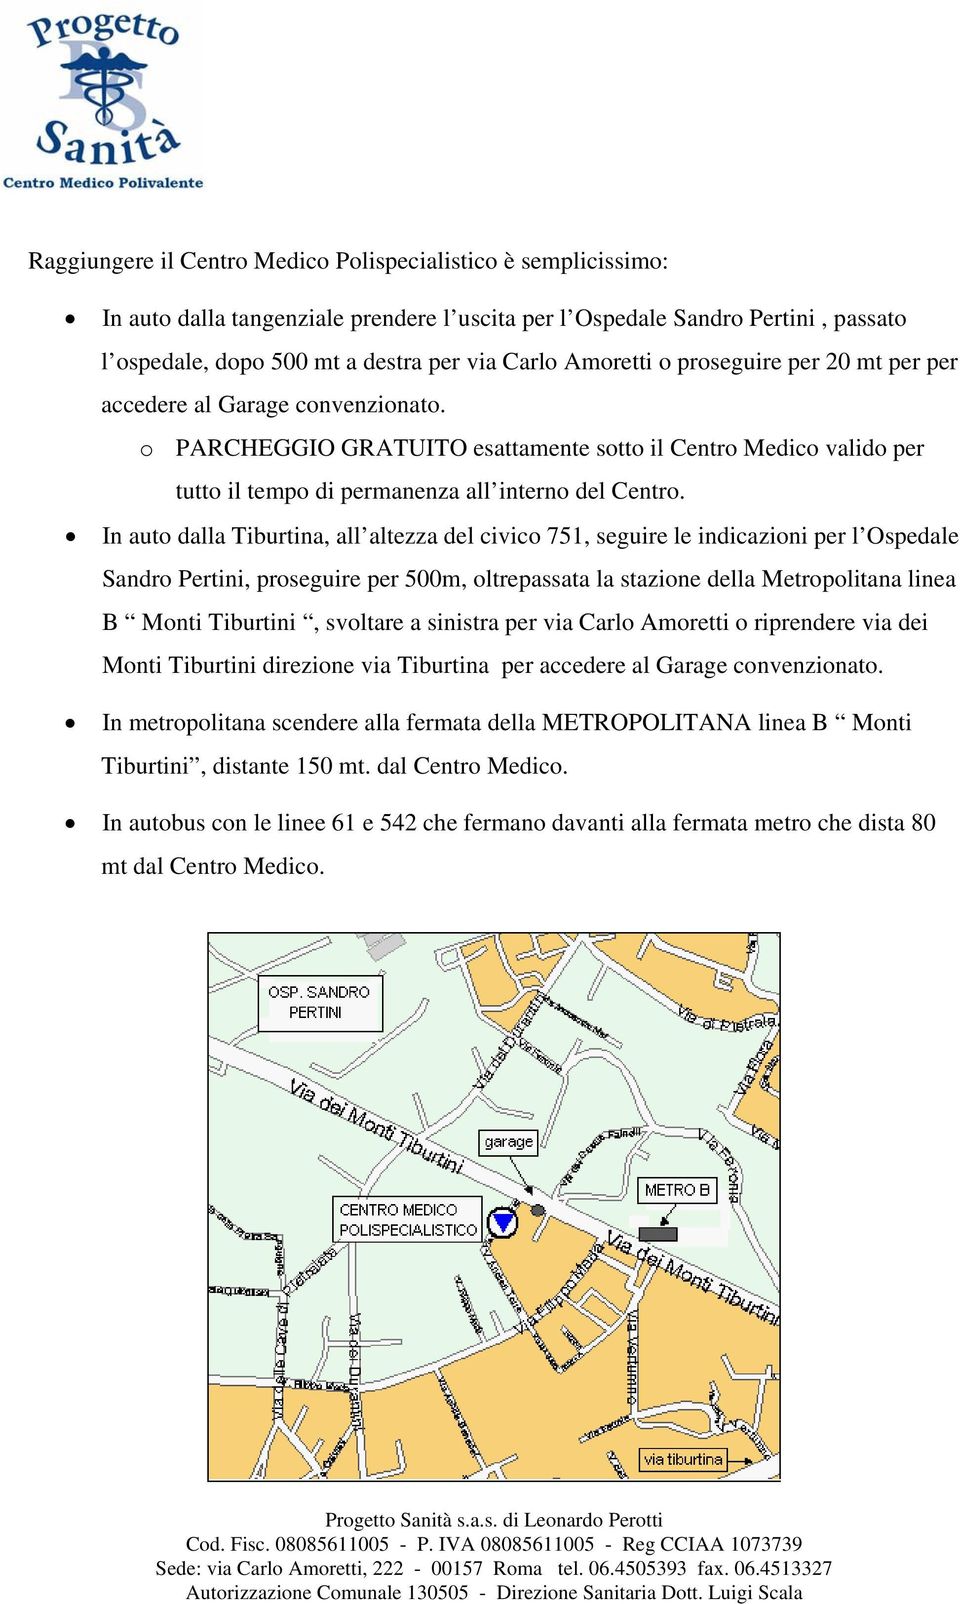 In auto dalla Tiburtina, all altezza del civico 751, seguire le indicazioni per l Ospedale Sandro Pertini, proseguire per 500m, oltrepassata la stazione della Metropolitana linea B Monti Tiburtini,